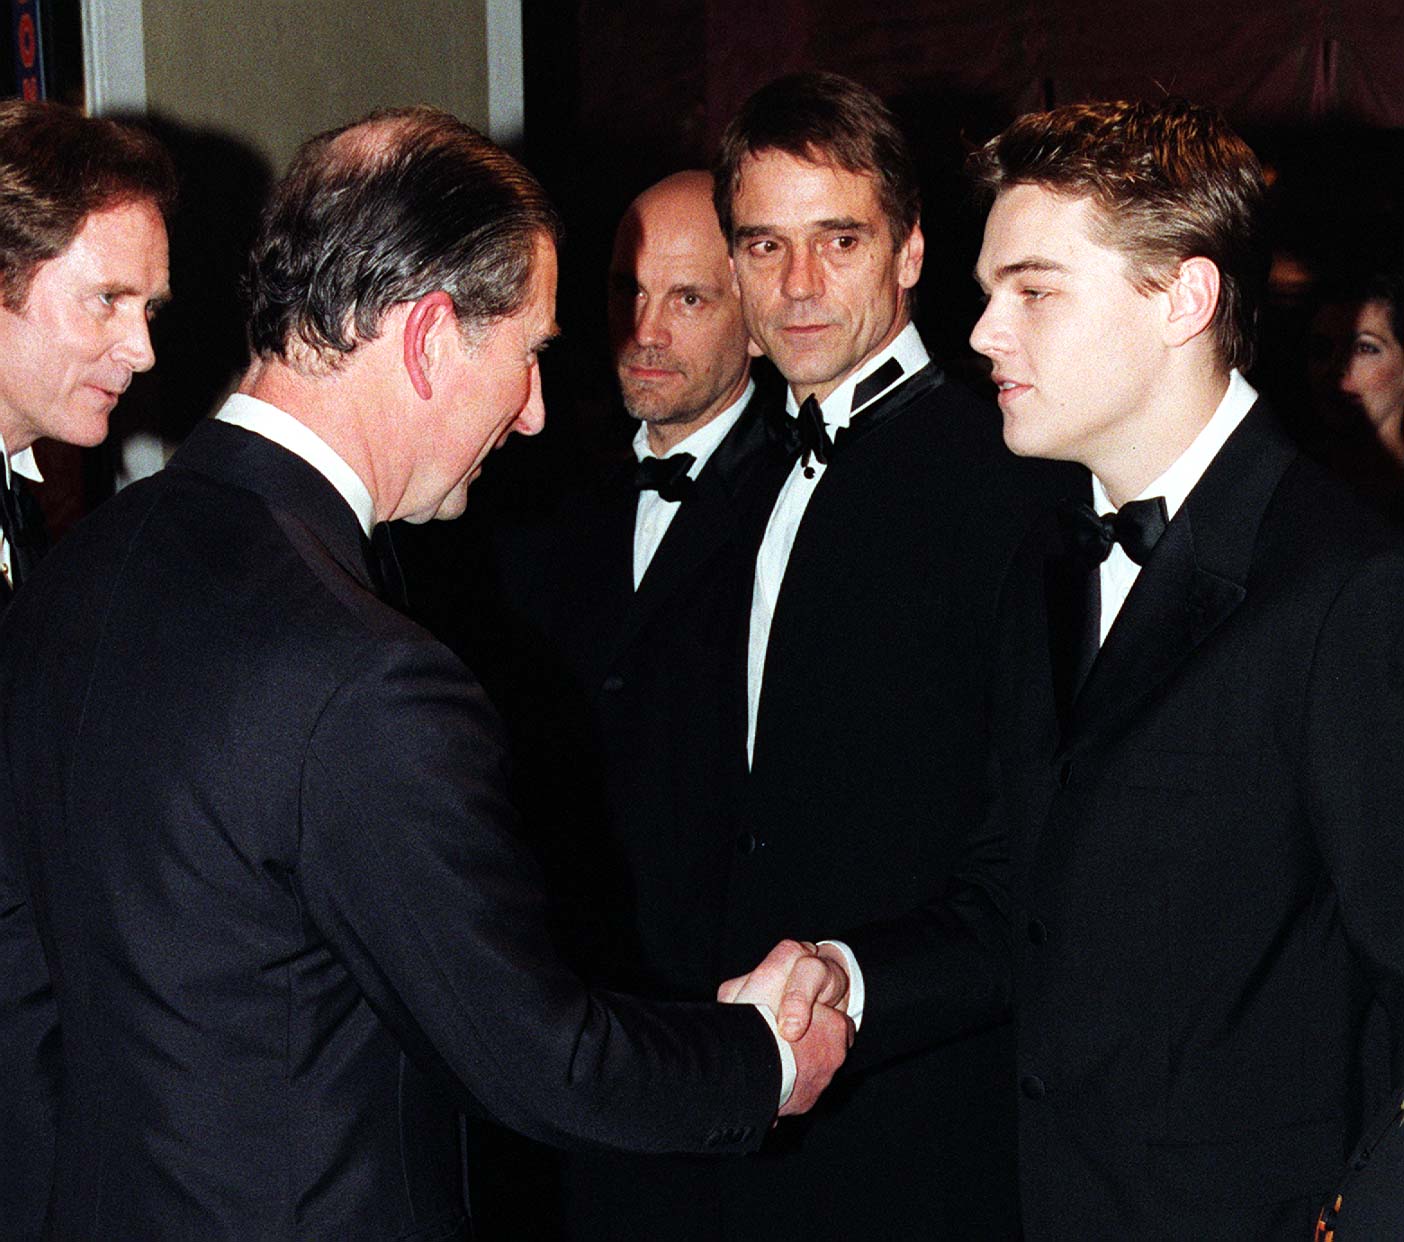 Charles Prince de Galles (aujourd'hui Roi Charles III) serre la main de Leonardo DiCaprio lors de la première royale de "L'homme au masque de fer" le 19 mars 1998 | Source : Getty Images